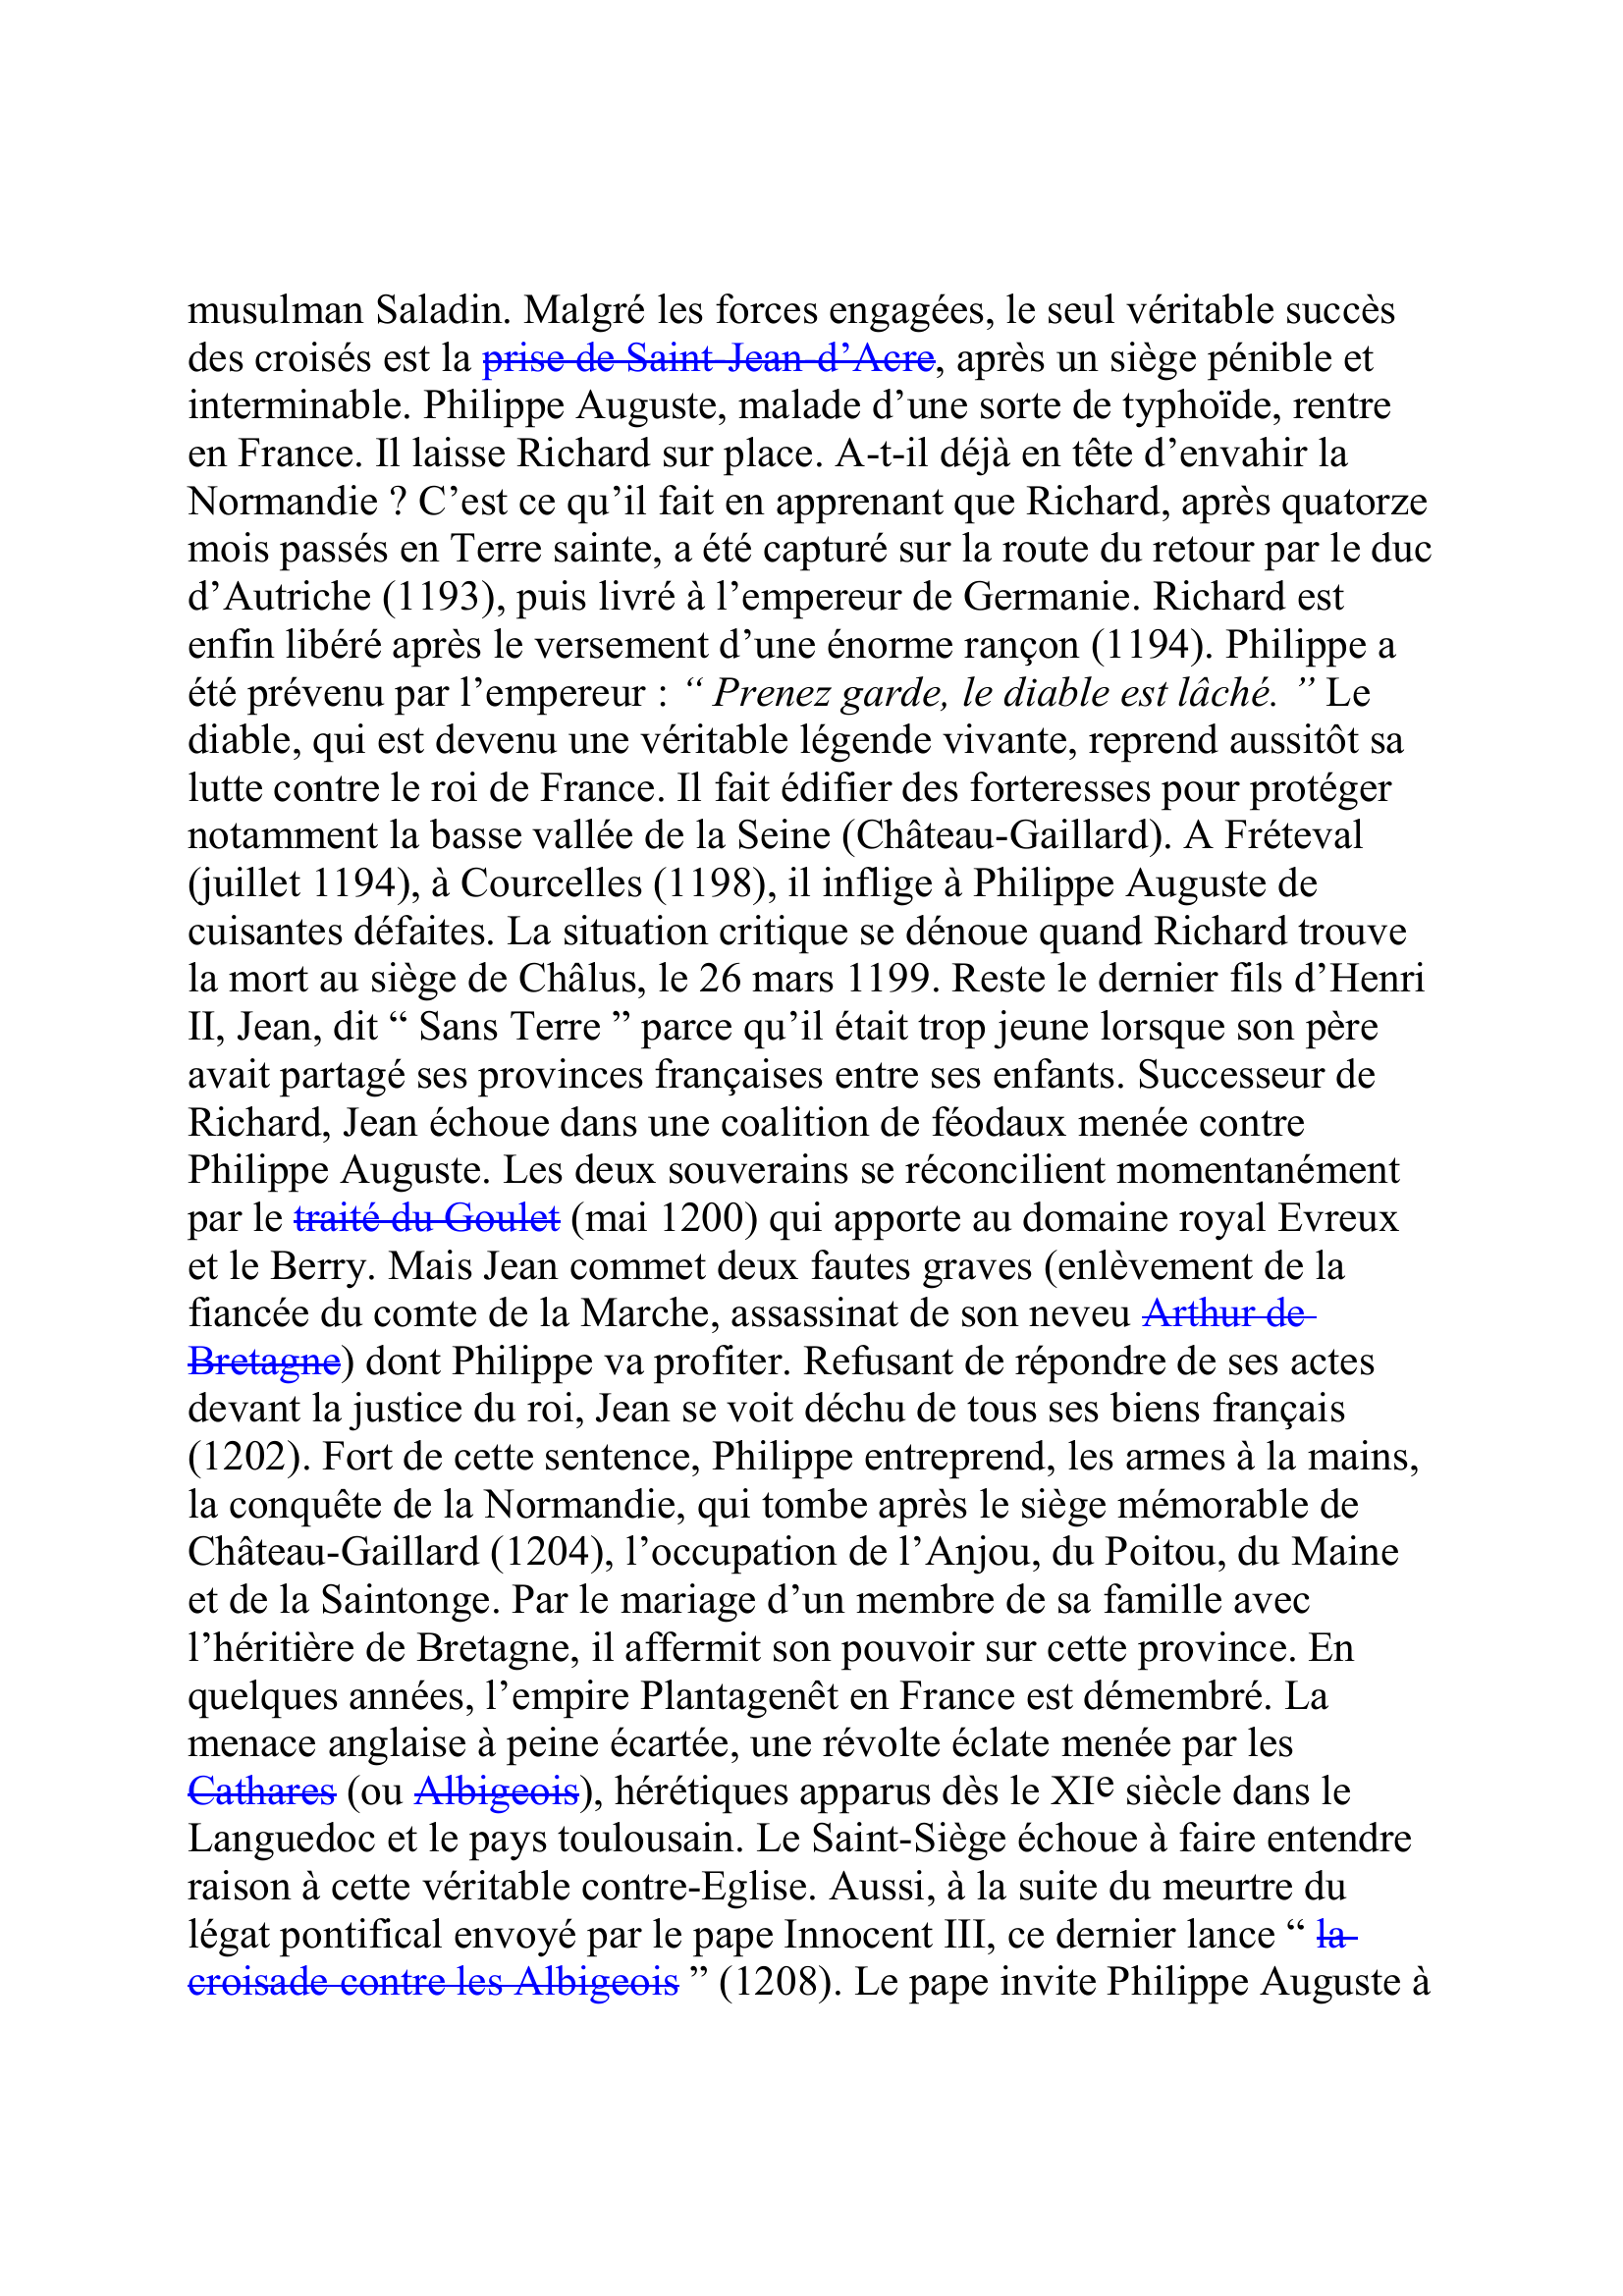 Prévisualisation du document PHILIPPE II AUGUSTE
(21 août 1165-14 juillet 1223)
Roi de France (1180-1223)
Fils de Louis VII et d'Adèle de Champagne, Philippe vient d'avoir
quinze ans lorsqu'il monte sur le trône.